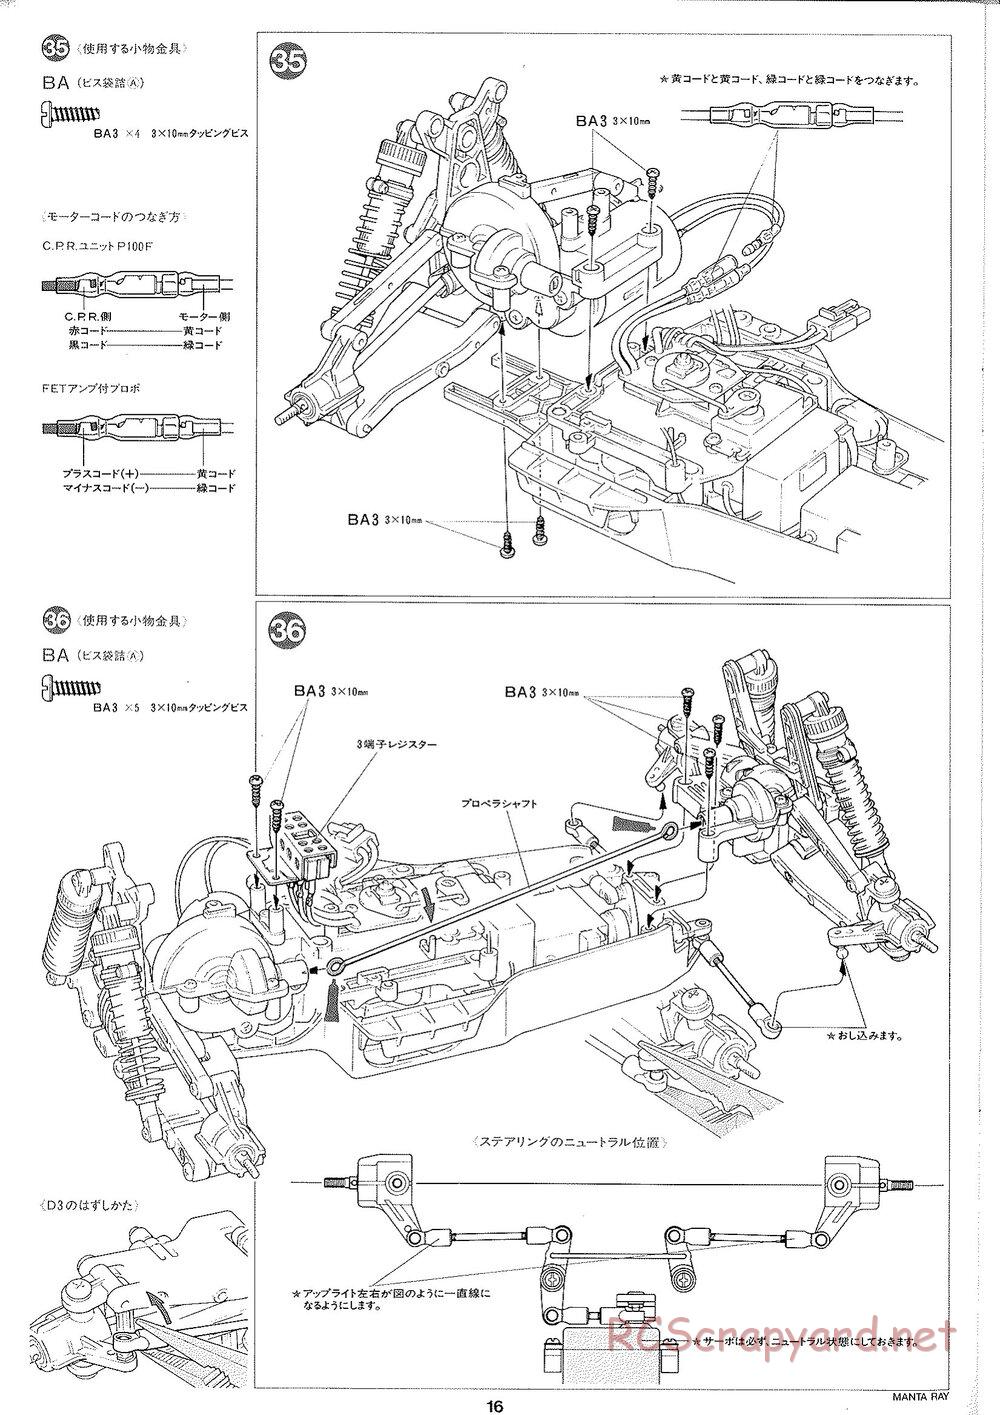 Tamiya - Manta Ray 2005 - DF-01 Chassis - Manual - Page 17